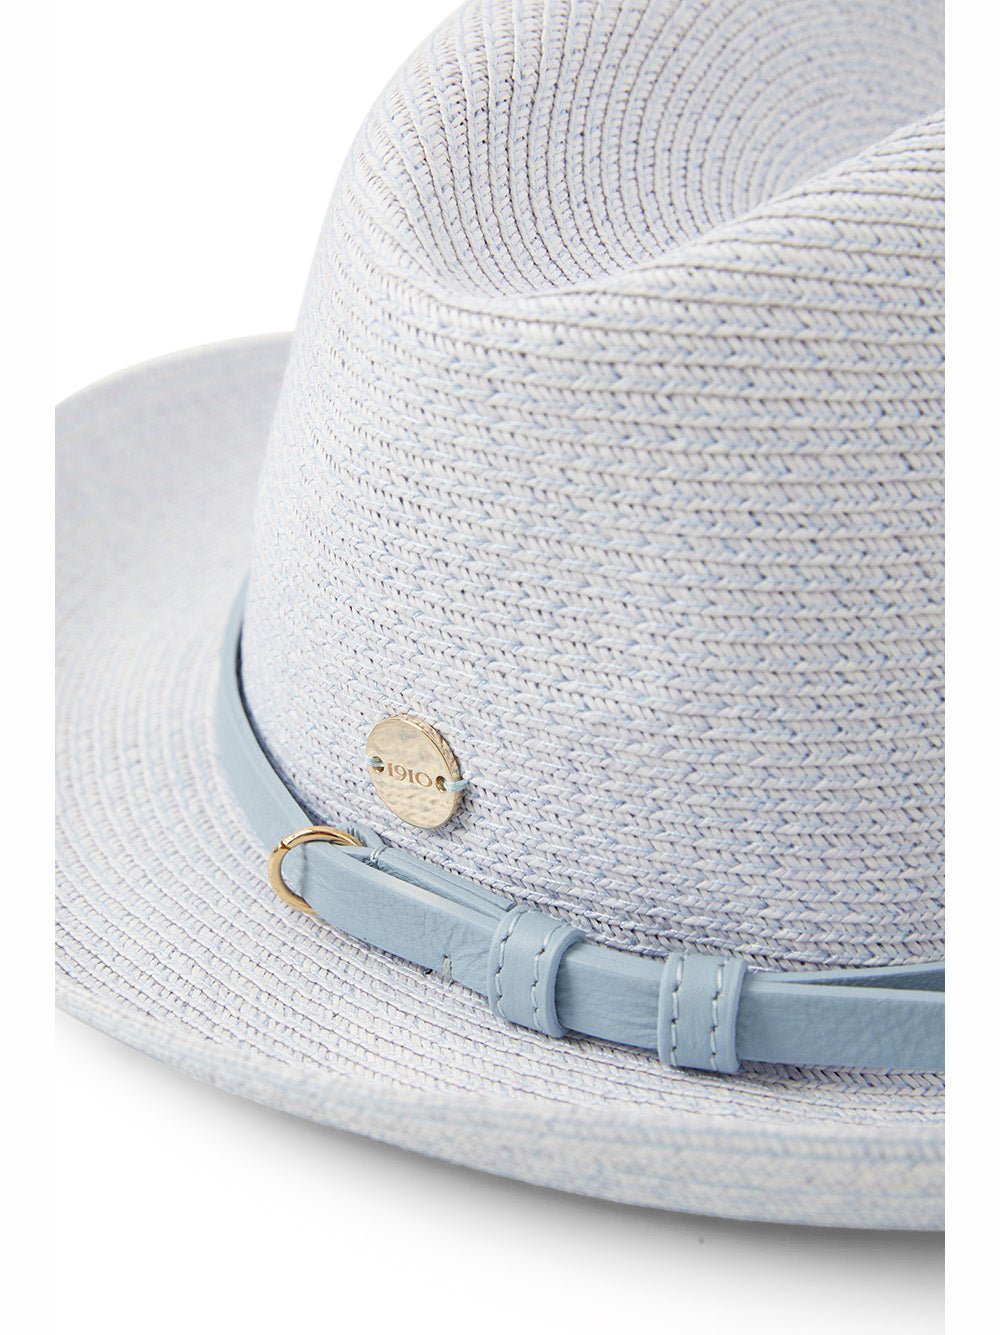 Catarzi - Soft accessories - Hats